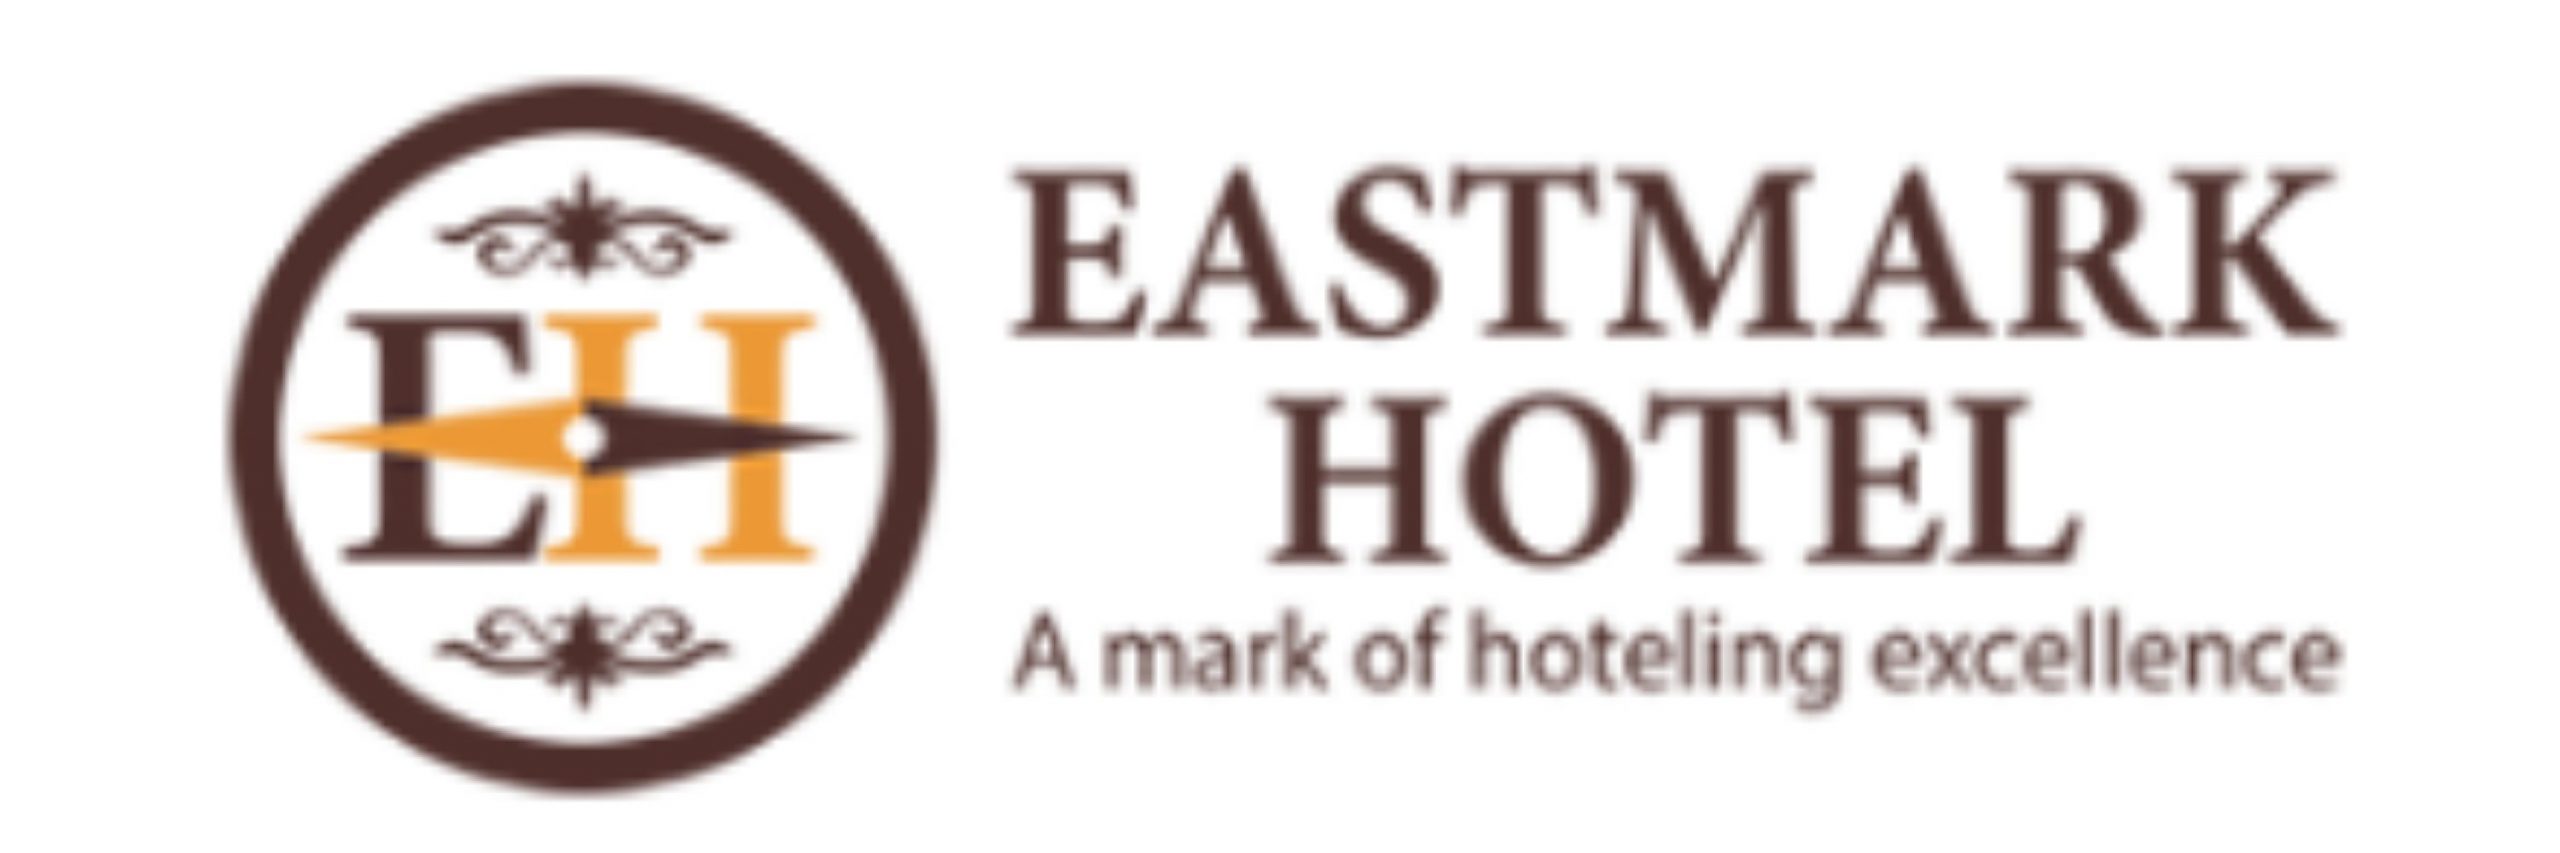 Eastmark Hotel |   Meetings & Events